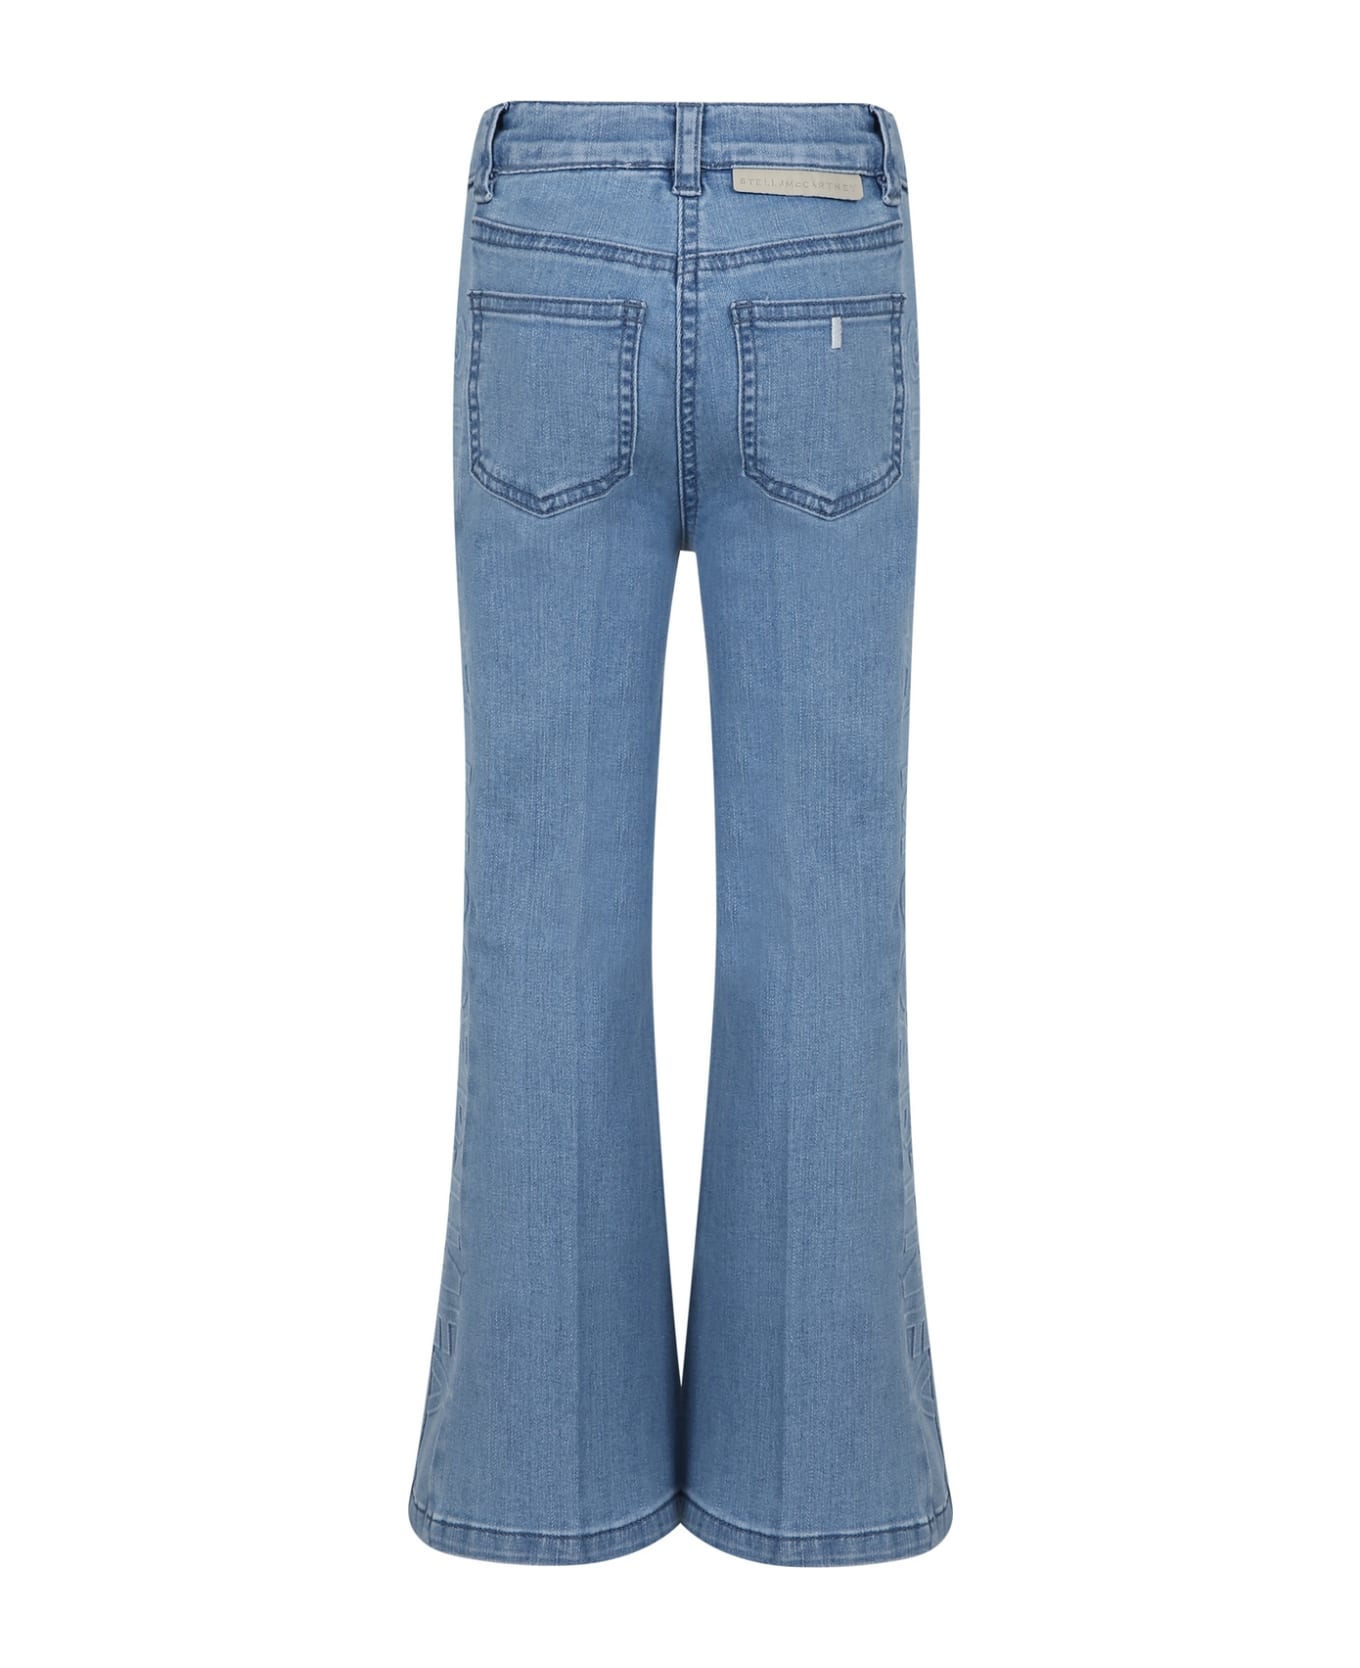 Stella McCartney Kids Light Blue Jeans For Girl With Logo - Denim